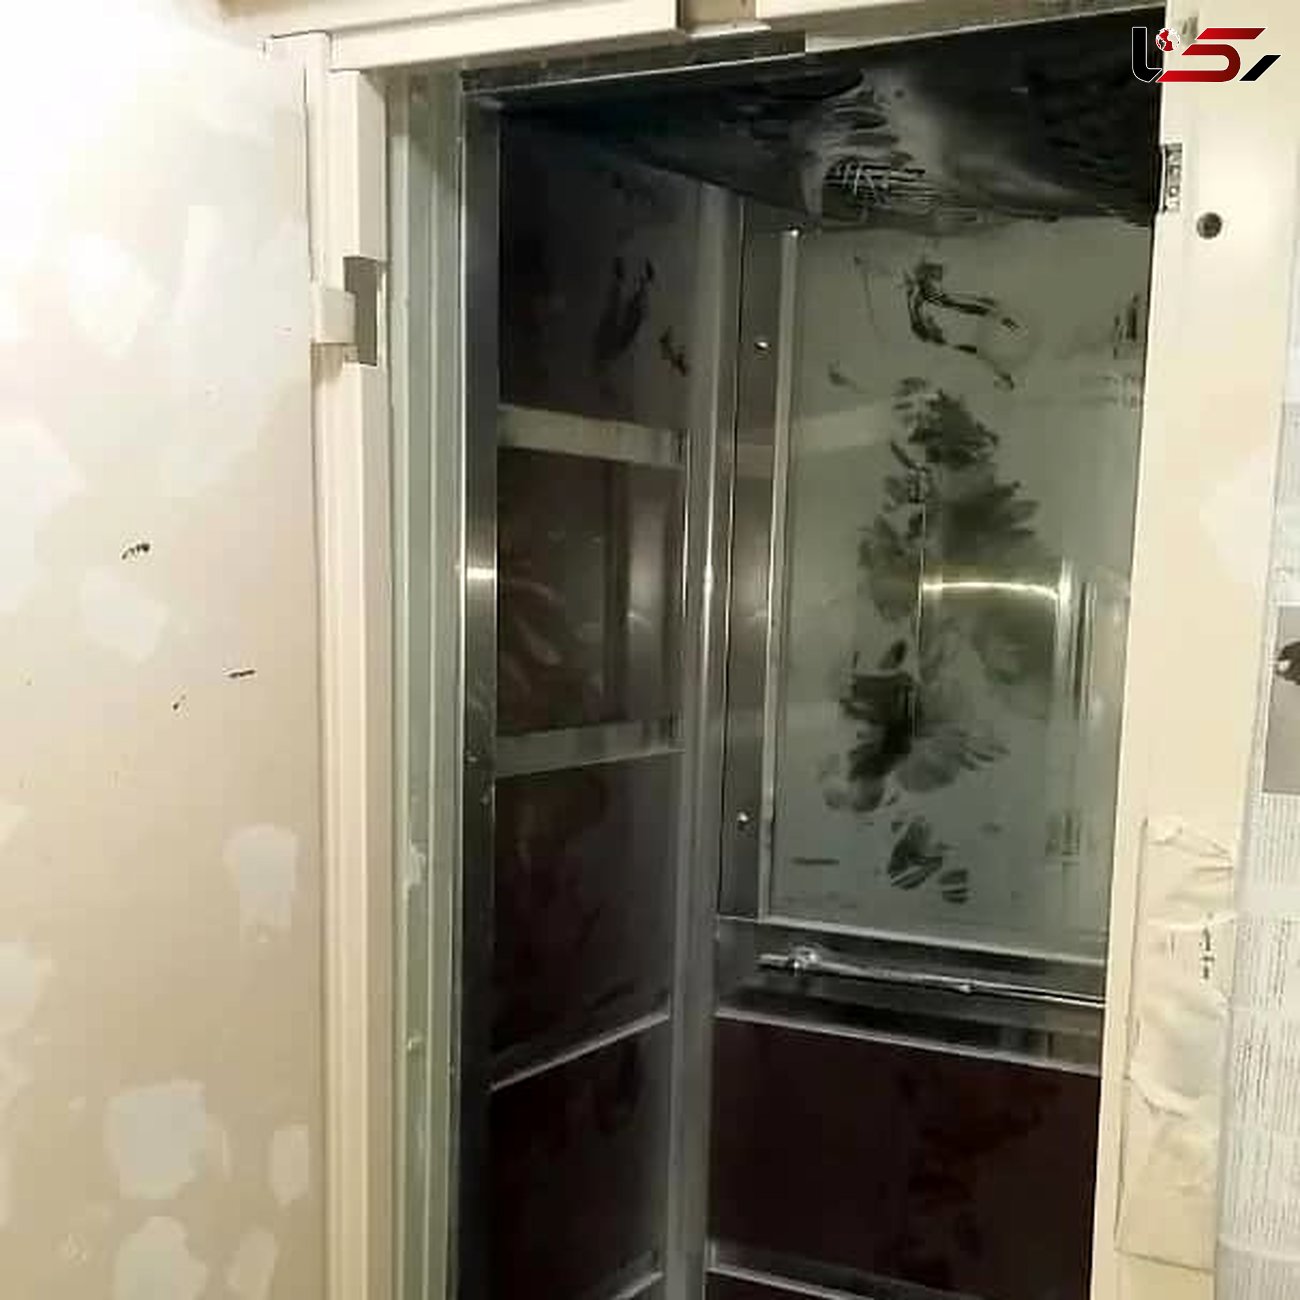  آتش در کابین آسانسور/به همراه عکس